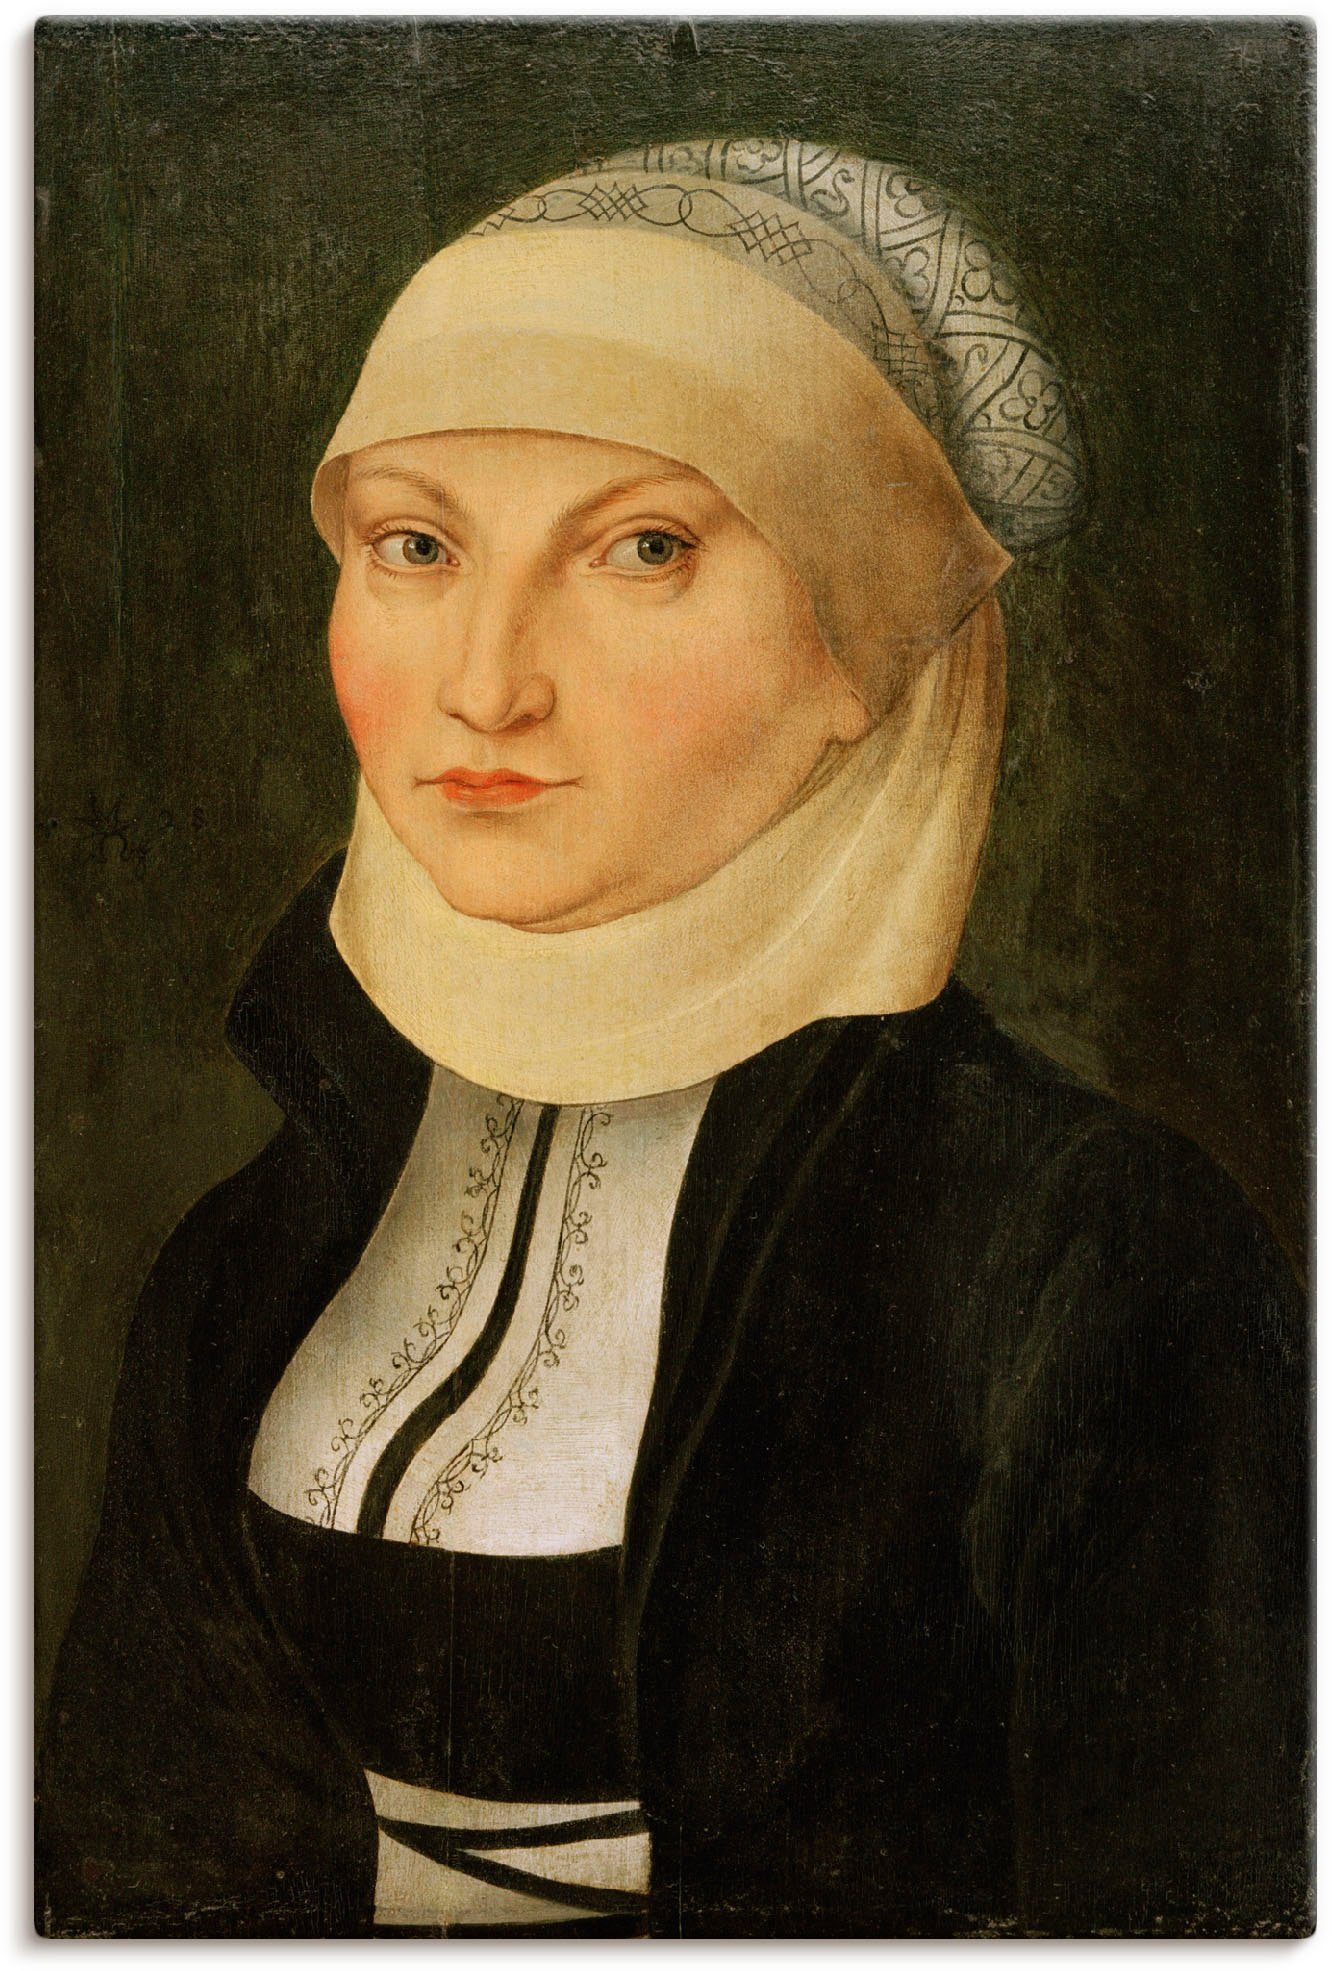 Artland Leinwandbild Katharina von Bora, Portrait (1 St), auf Keilrahmen gespannt